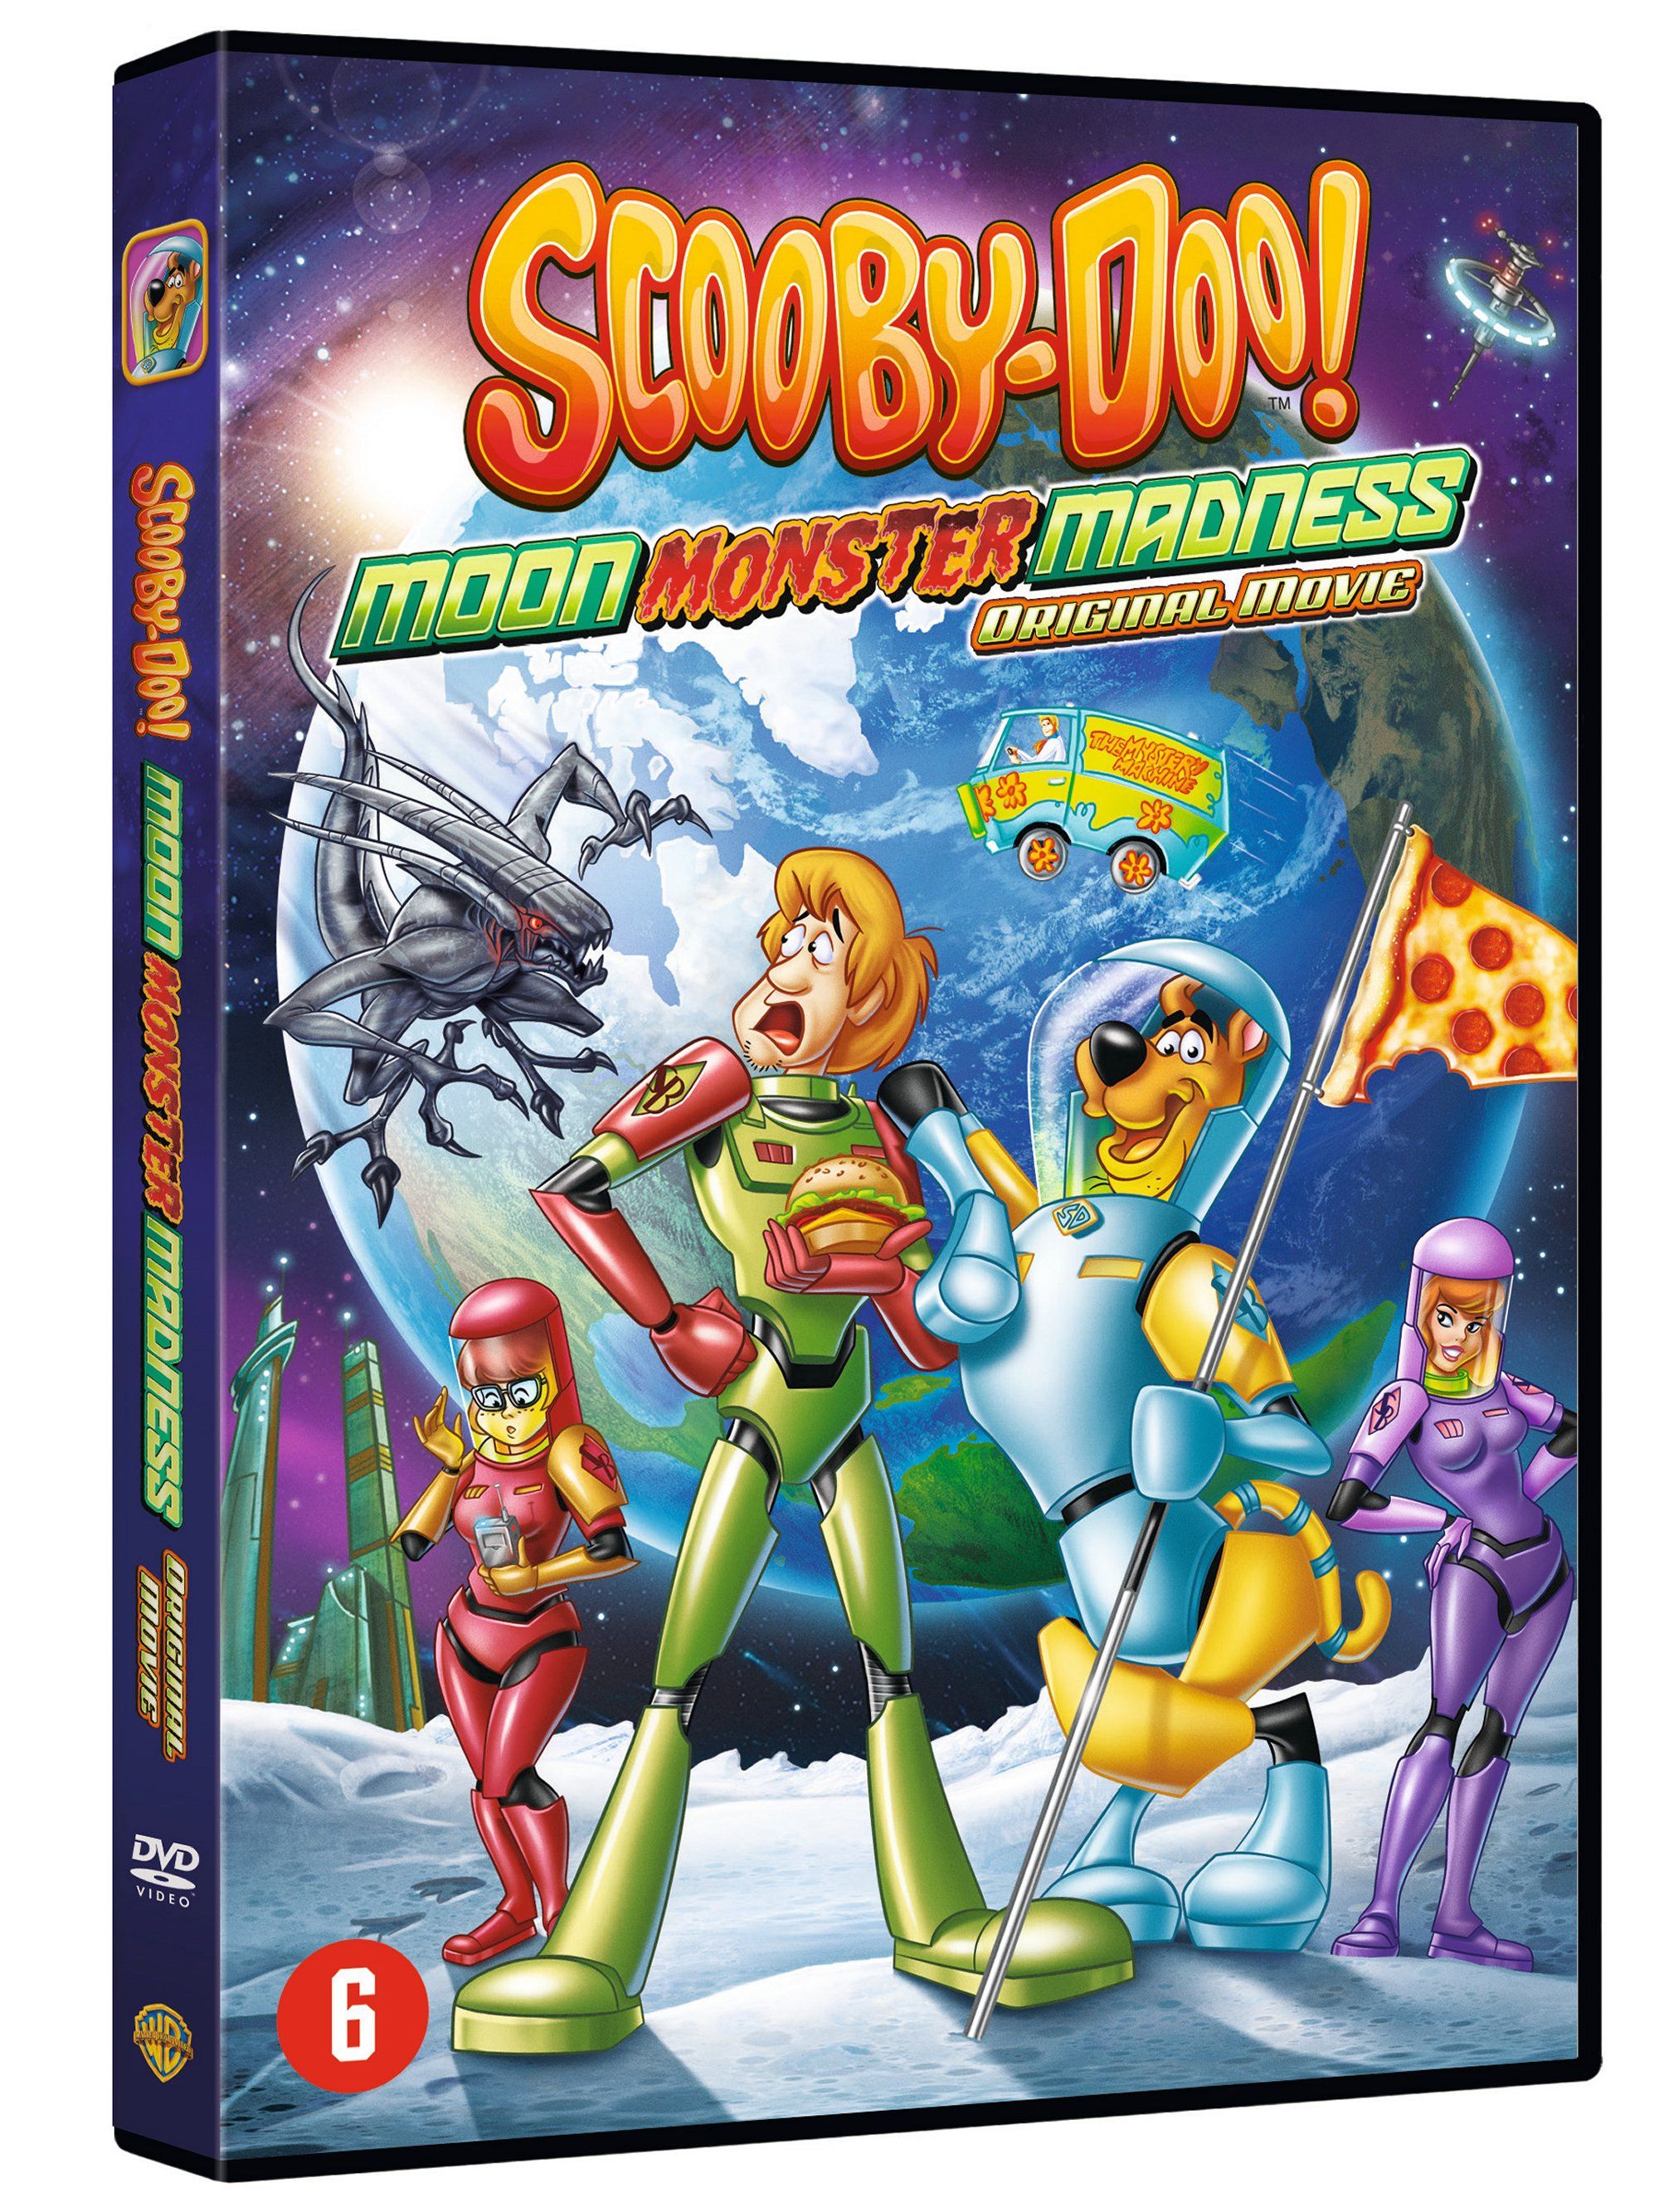 Scooby Doo Ps4 Gameswesternbowl